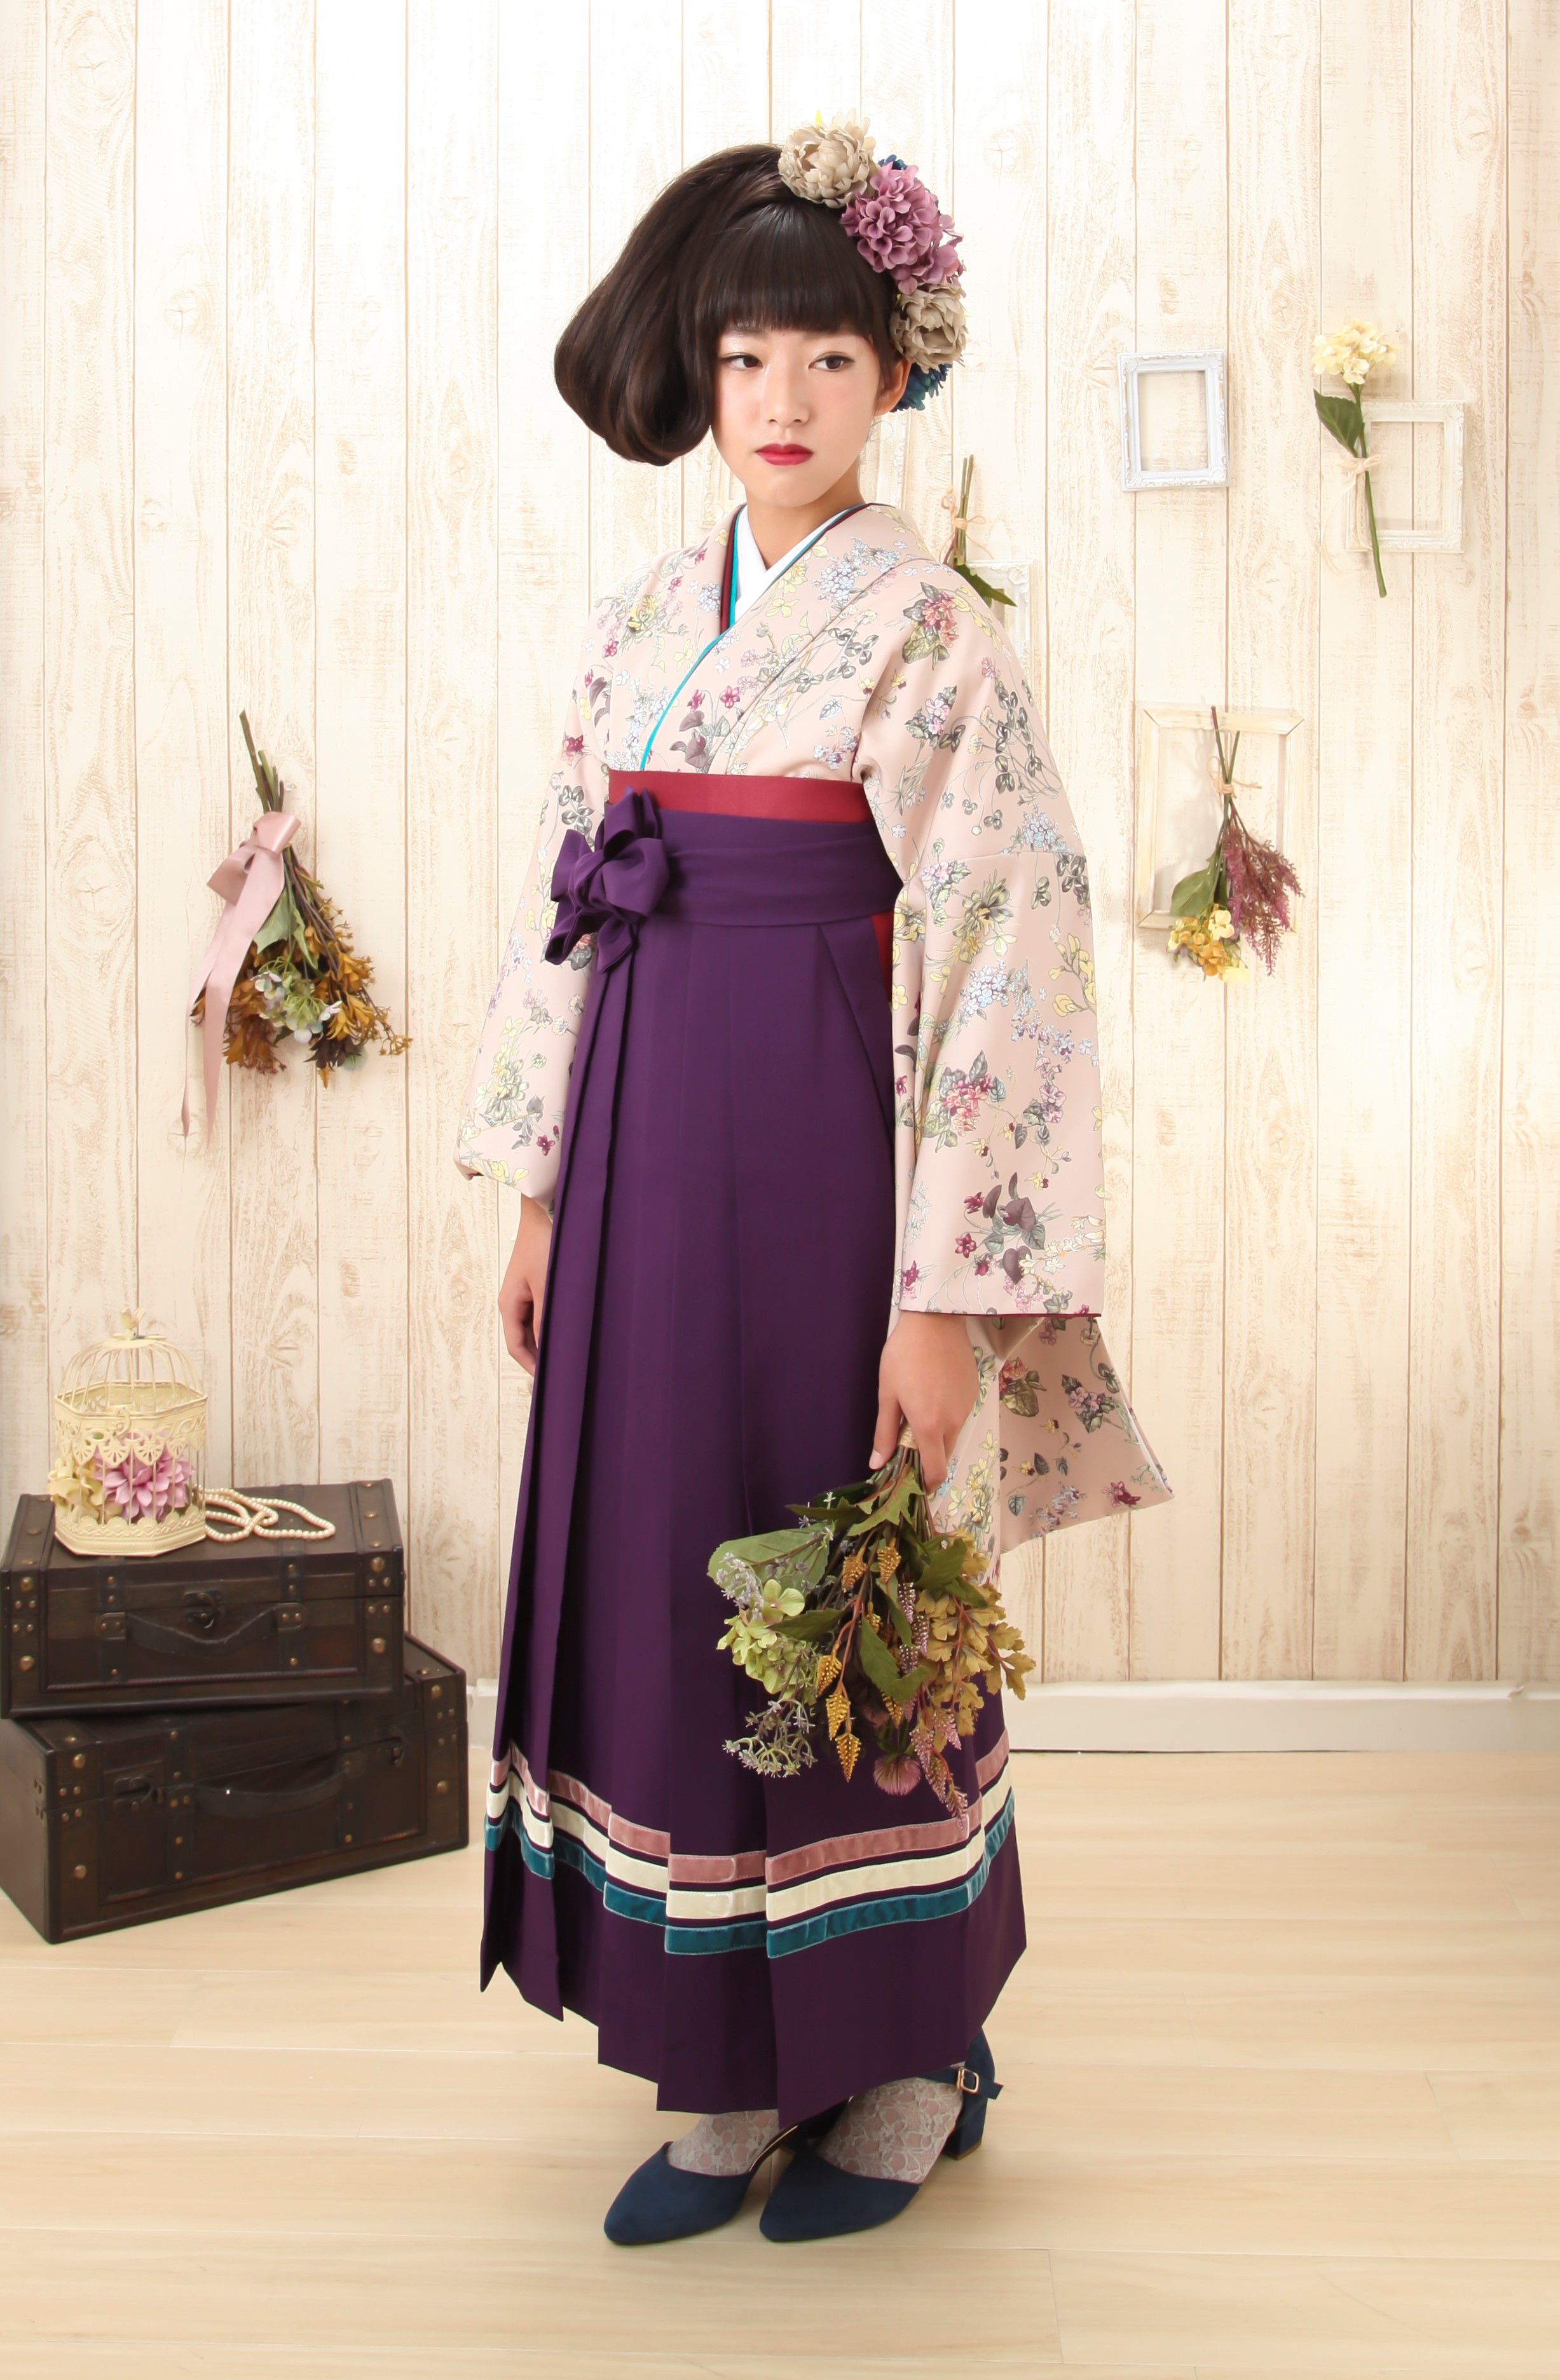 卒業袴 小花が可愛い アンティーク風のお着物 ブライダルおりづる 貸衣装 レンタル衣装